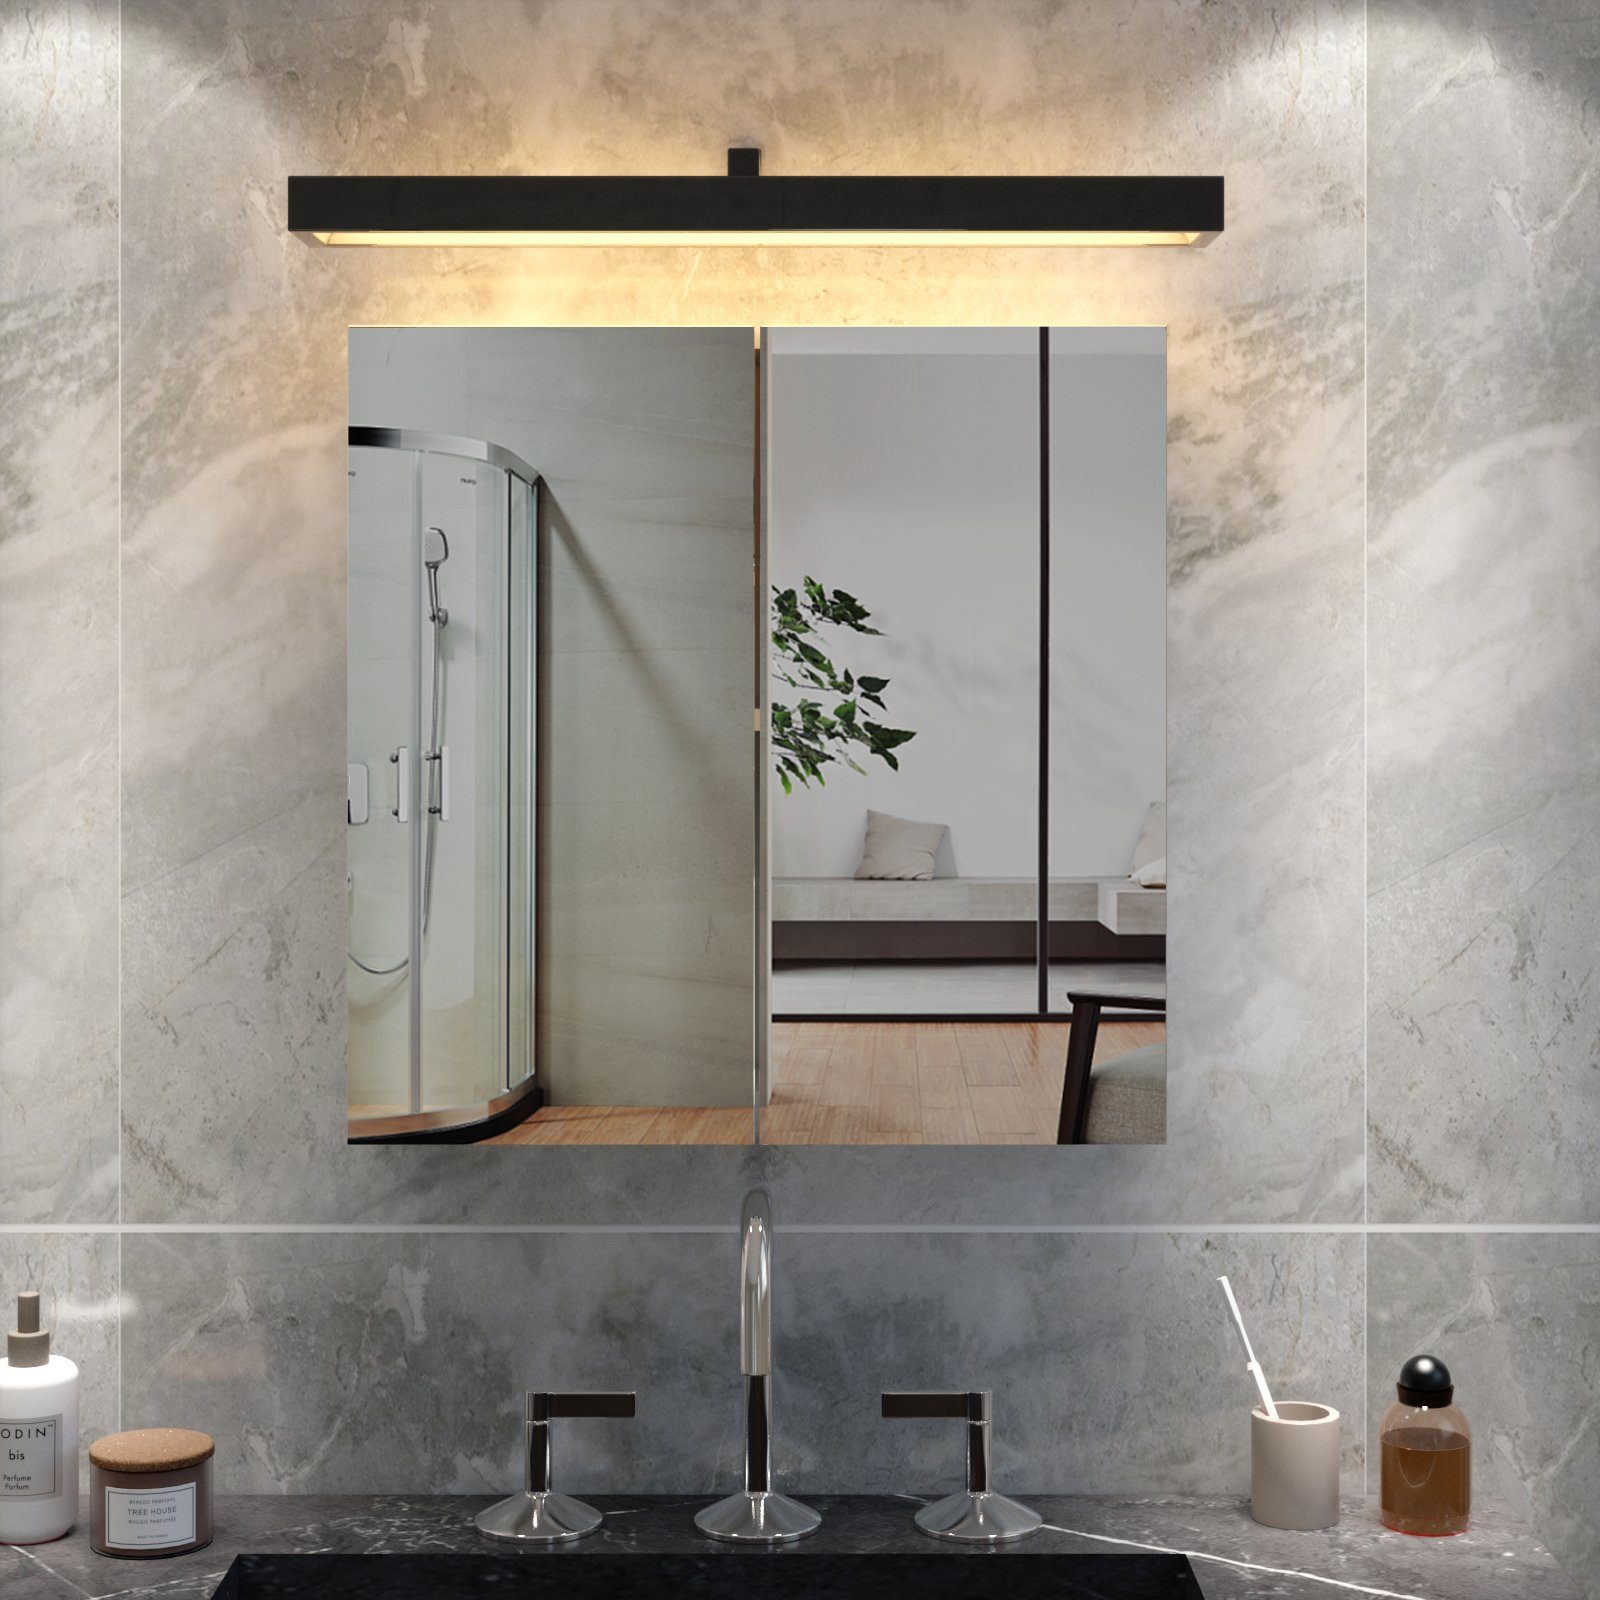 Badezimmerspiegelschrank x Weiß Badezimmerspiegel 45 45 Mondeer Türen mit 12.9 2 x cm, Wandschrank, Hängeschrank,